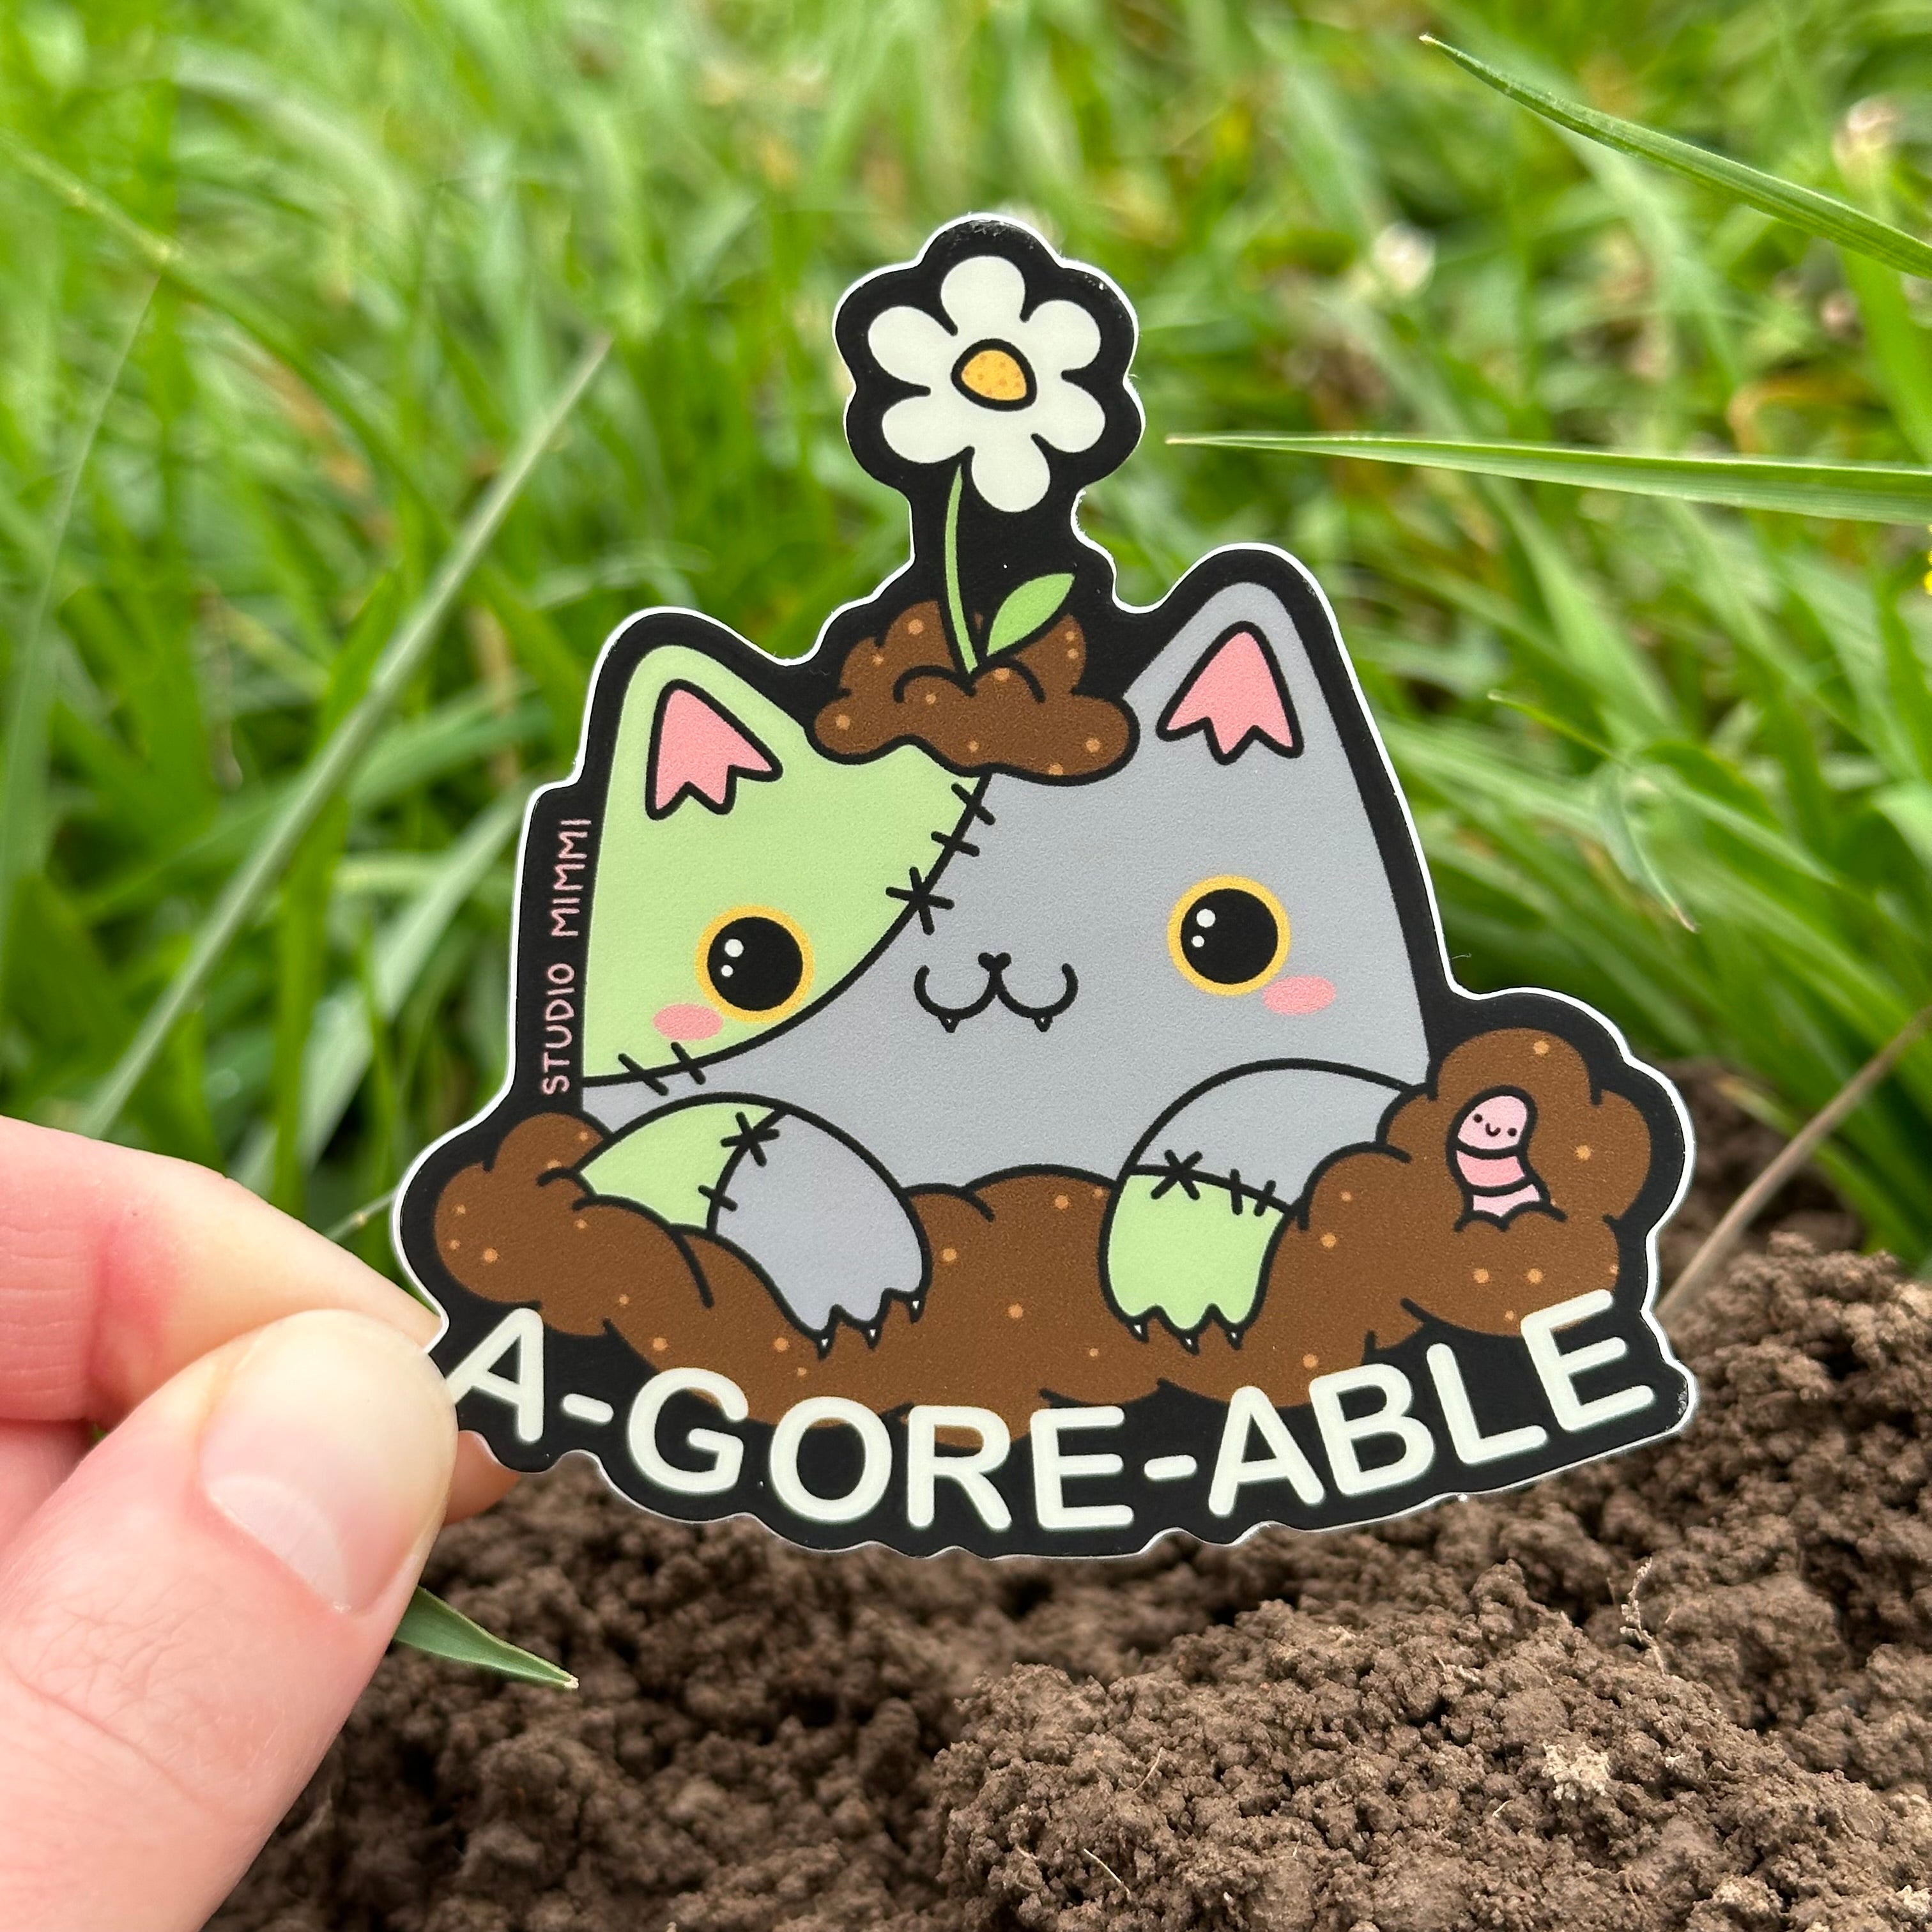 “A-GORE-ABLE” Zombie Cat Vinyl Sticker